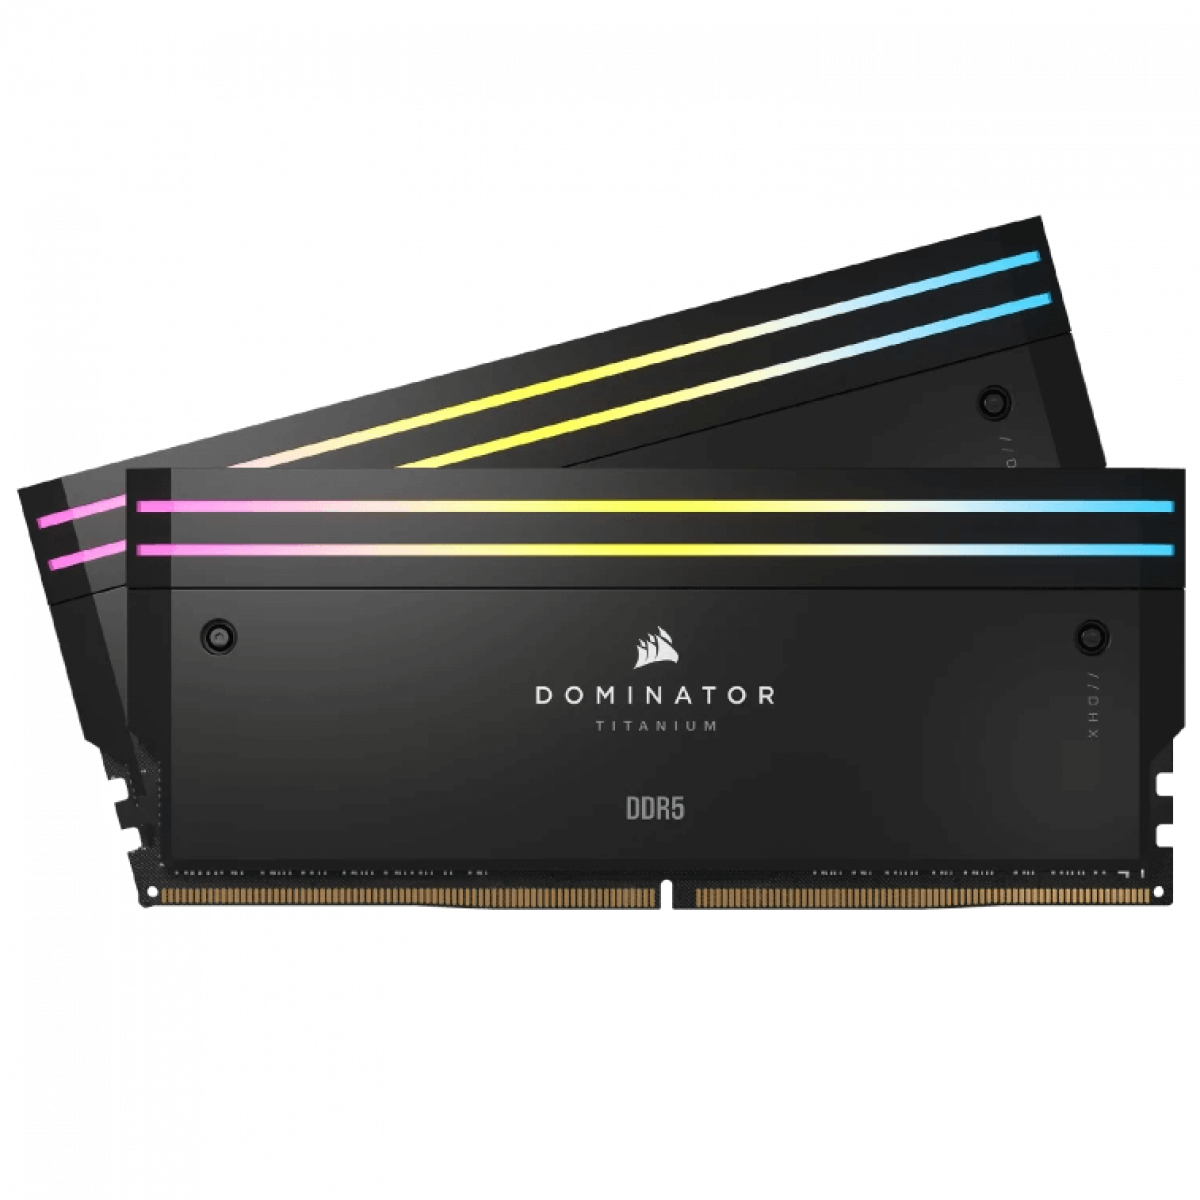 RAM DOMINATOR TITANIUM Black HeatspreaderDDR5, 7000MT/s 48GB 2x24GB DIMM, XMP 3.0, RGB LED, 1.4V